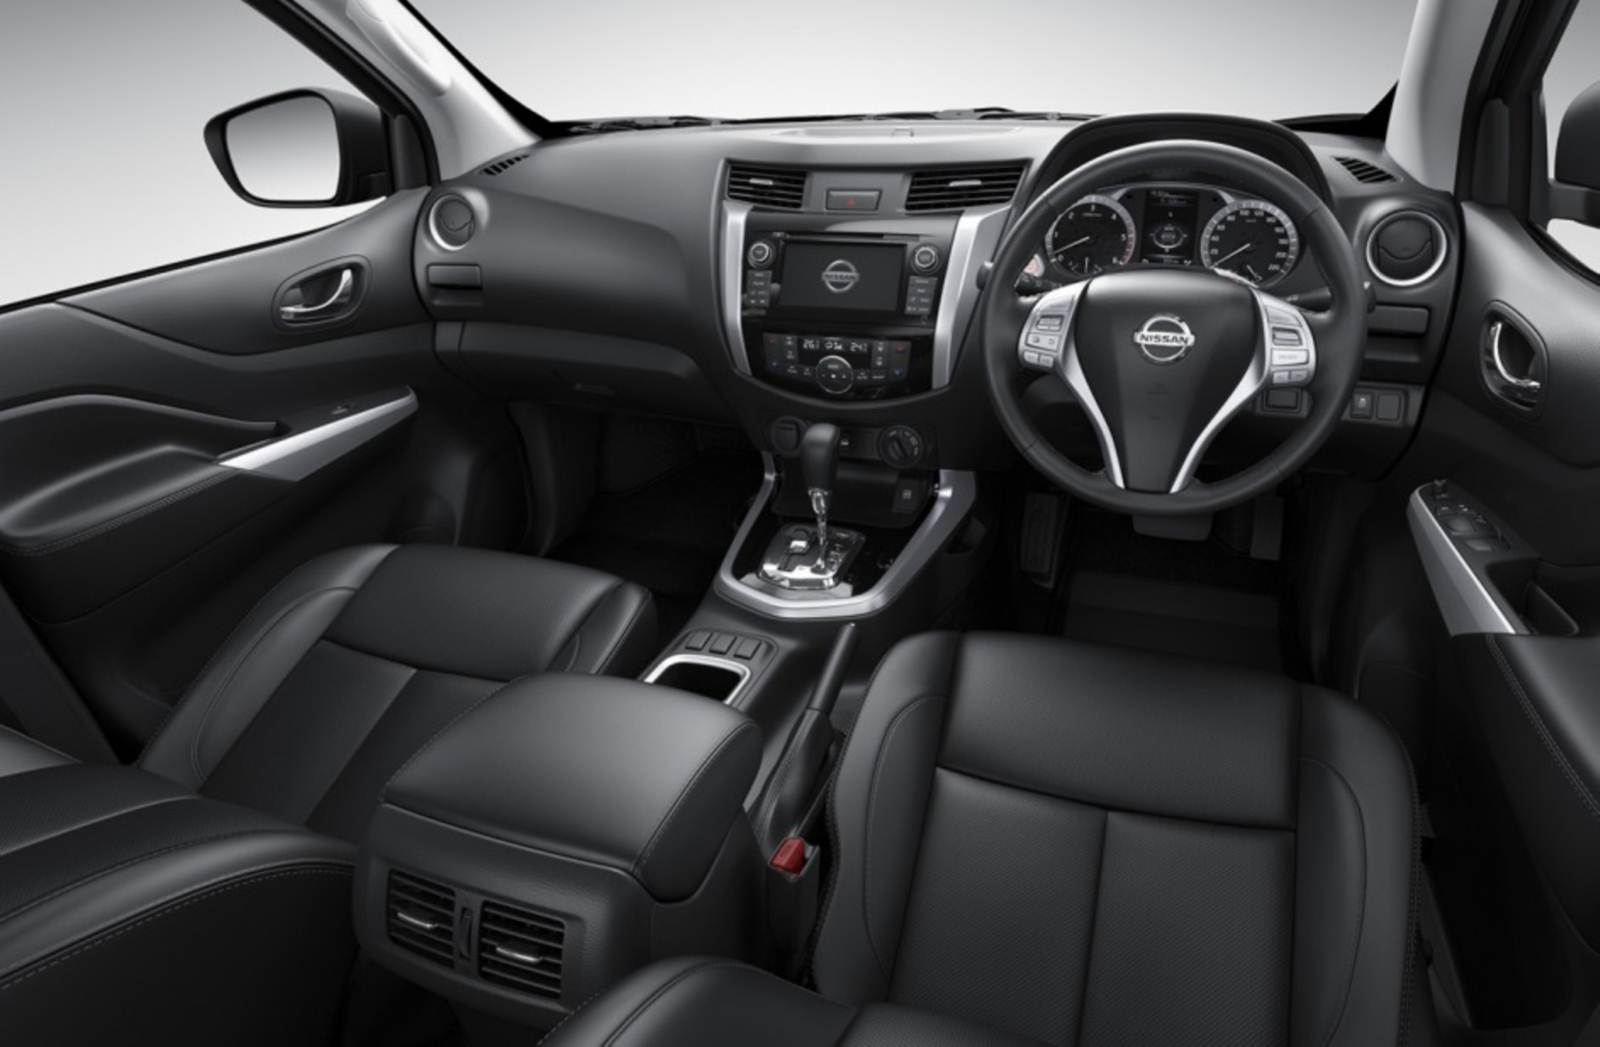 Nova Nissan Frontier 2015 - painel